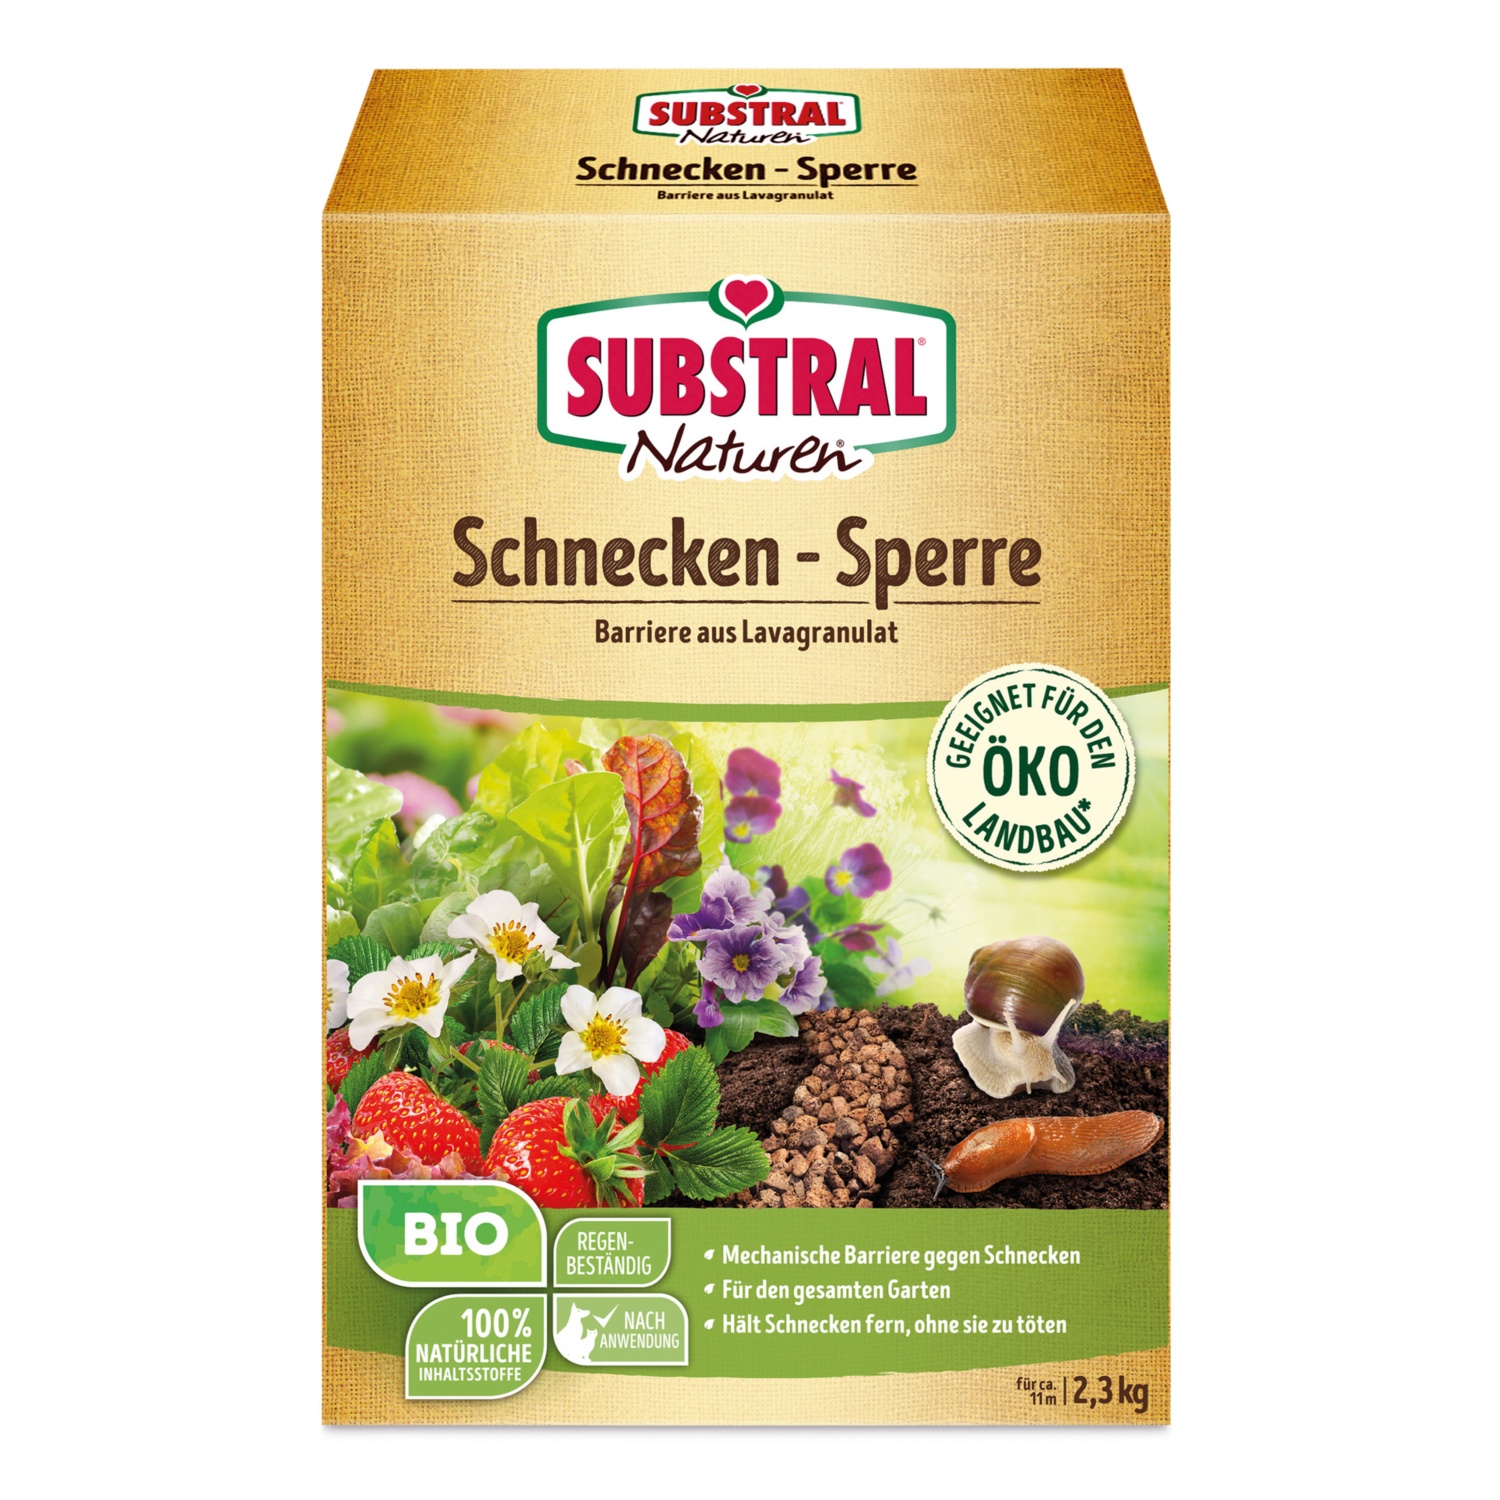 SUBSTRAL Naturen Schnecken-Sperre